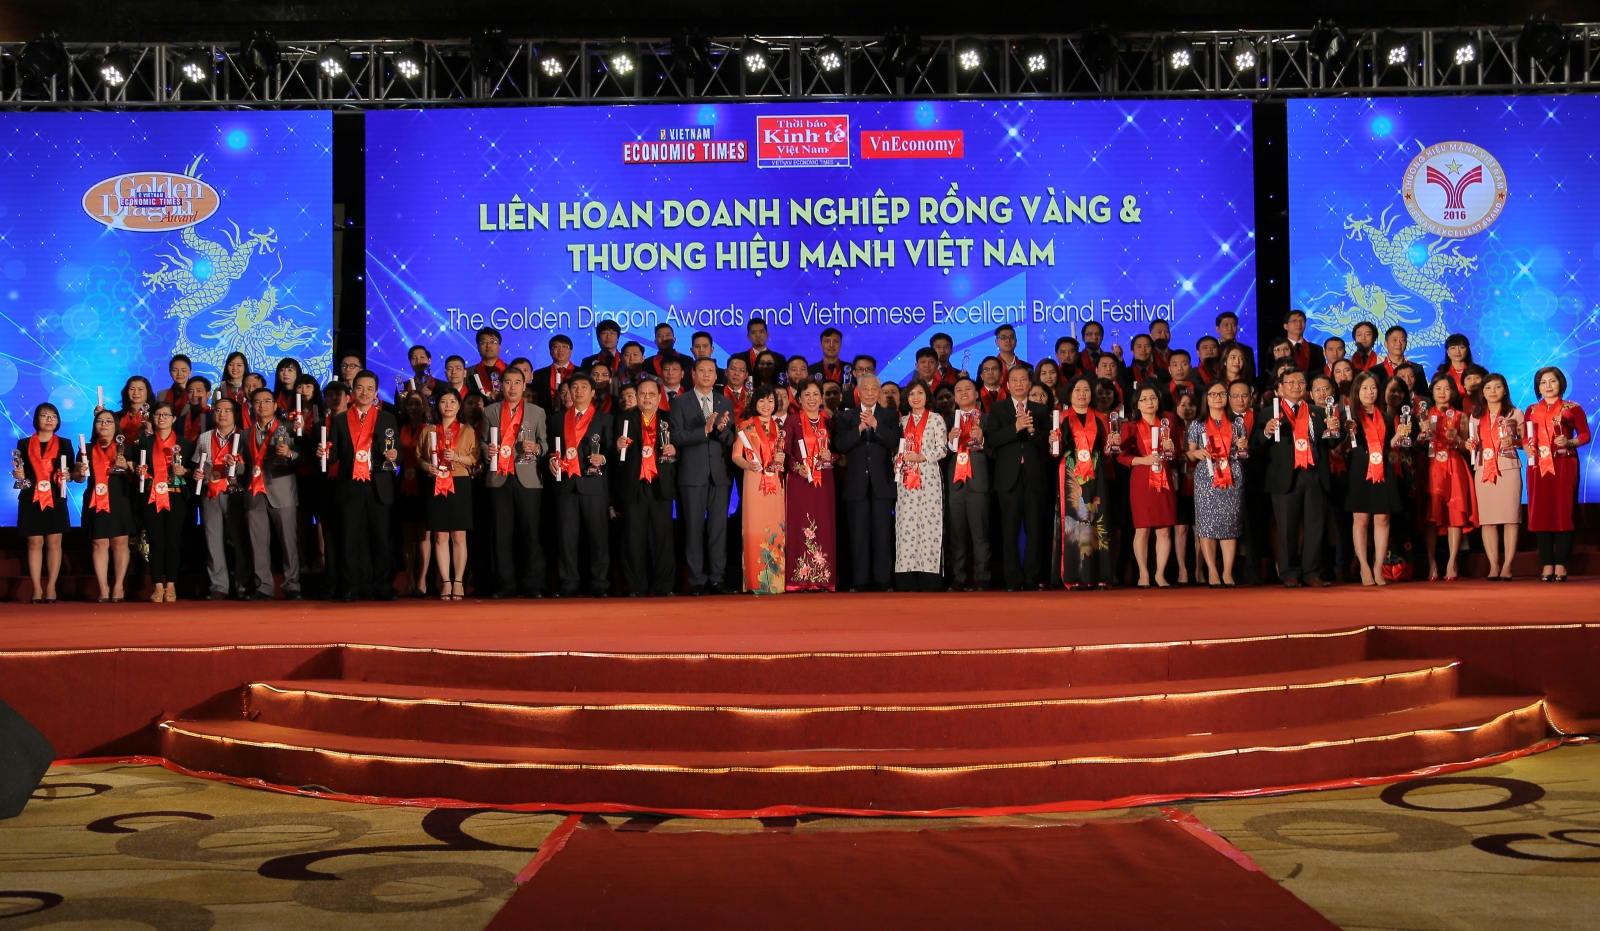 Vạn Xuân nhận giải thưởng tại Liên hoan doanh nghiệp Rồng Vàng và Thương hiệu mạnh Việt Nam 2016-2017